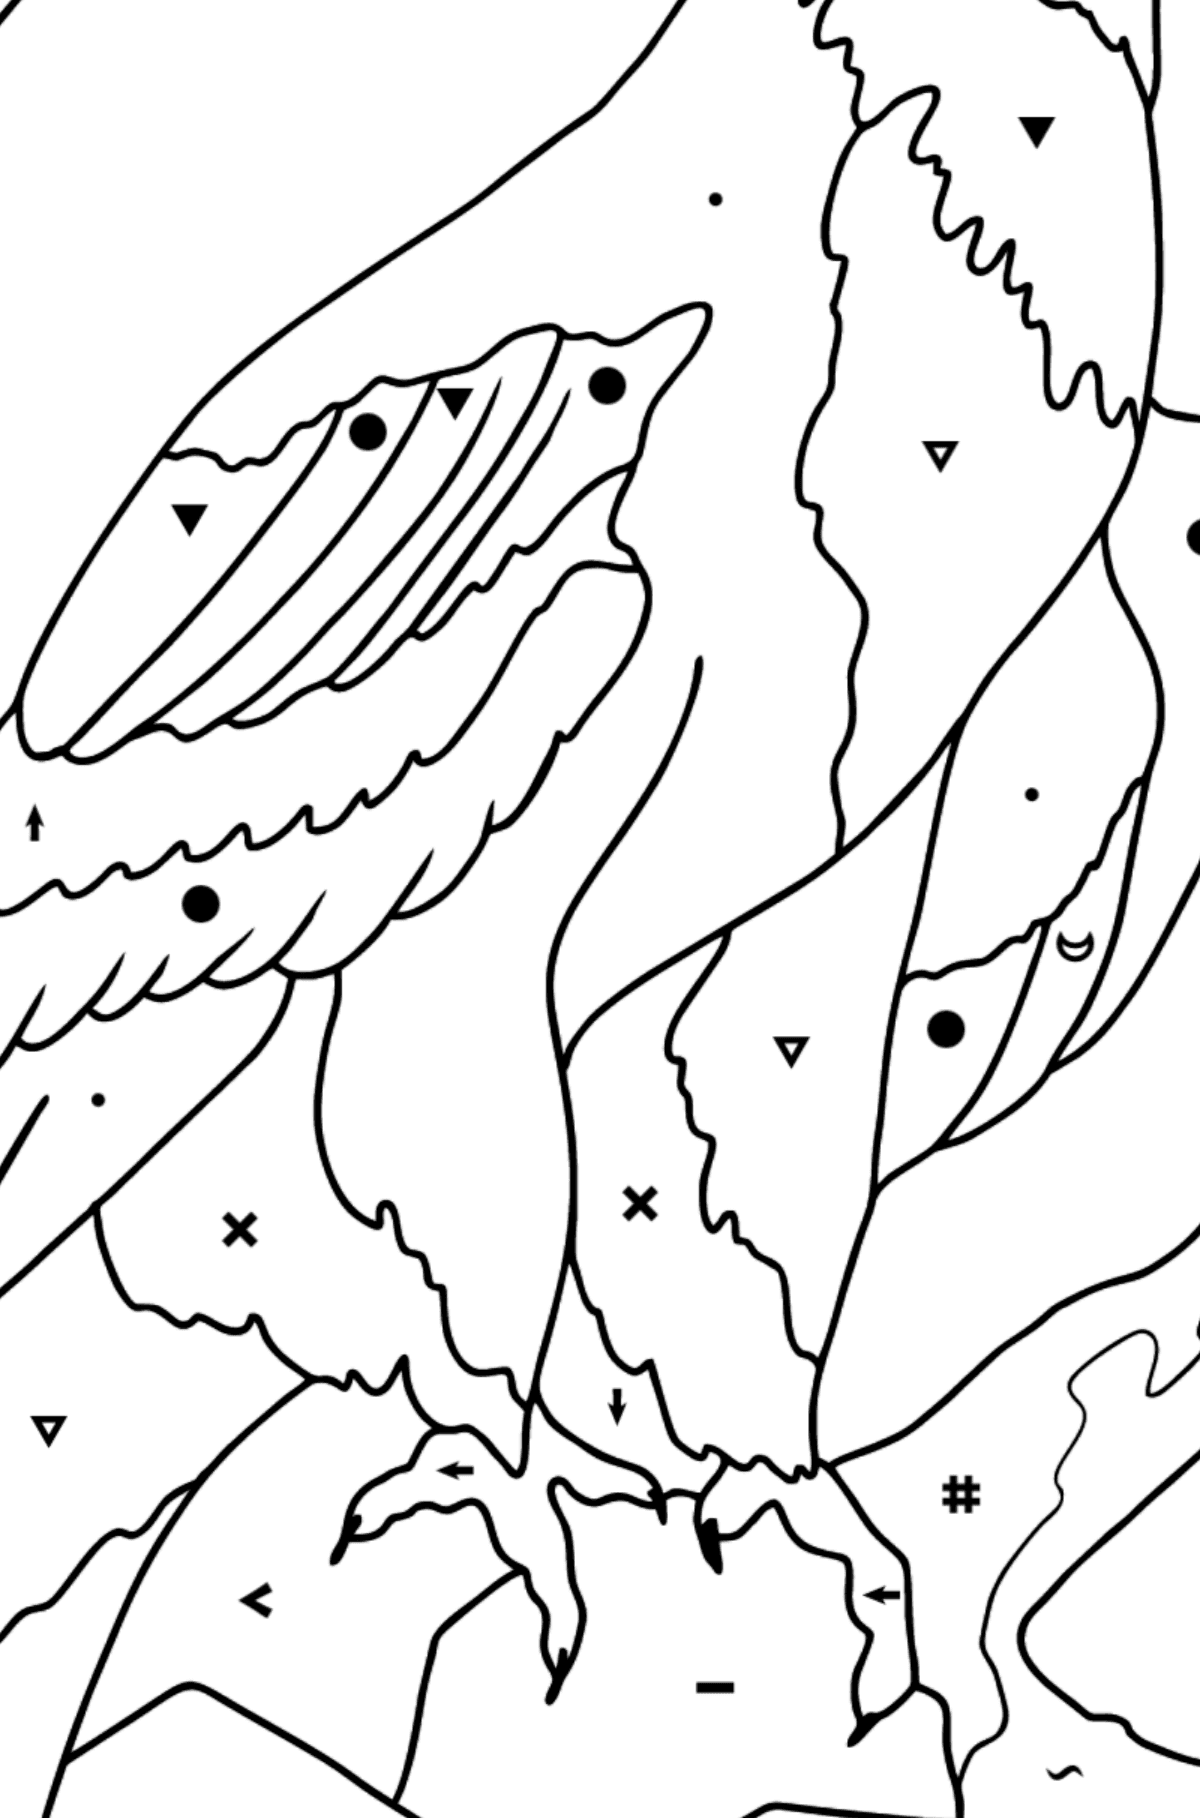 Coloriage - Un aigle à la recherche d'une proie - Coloriage par Symboles pour les Enfants